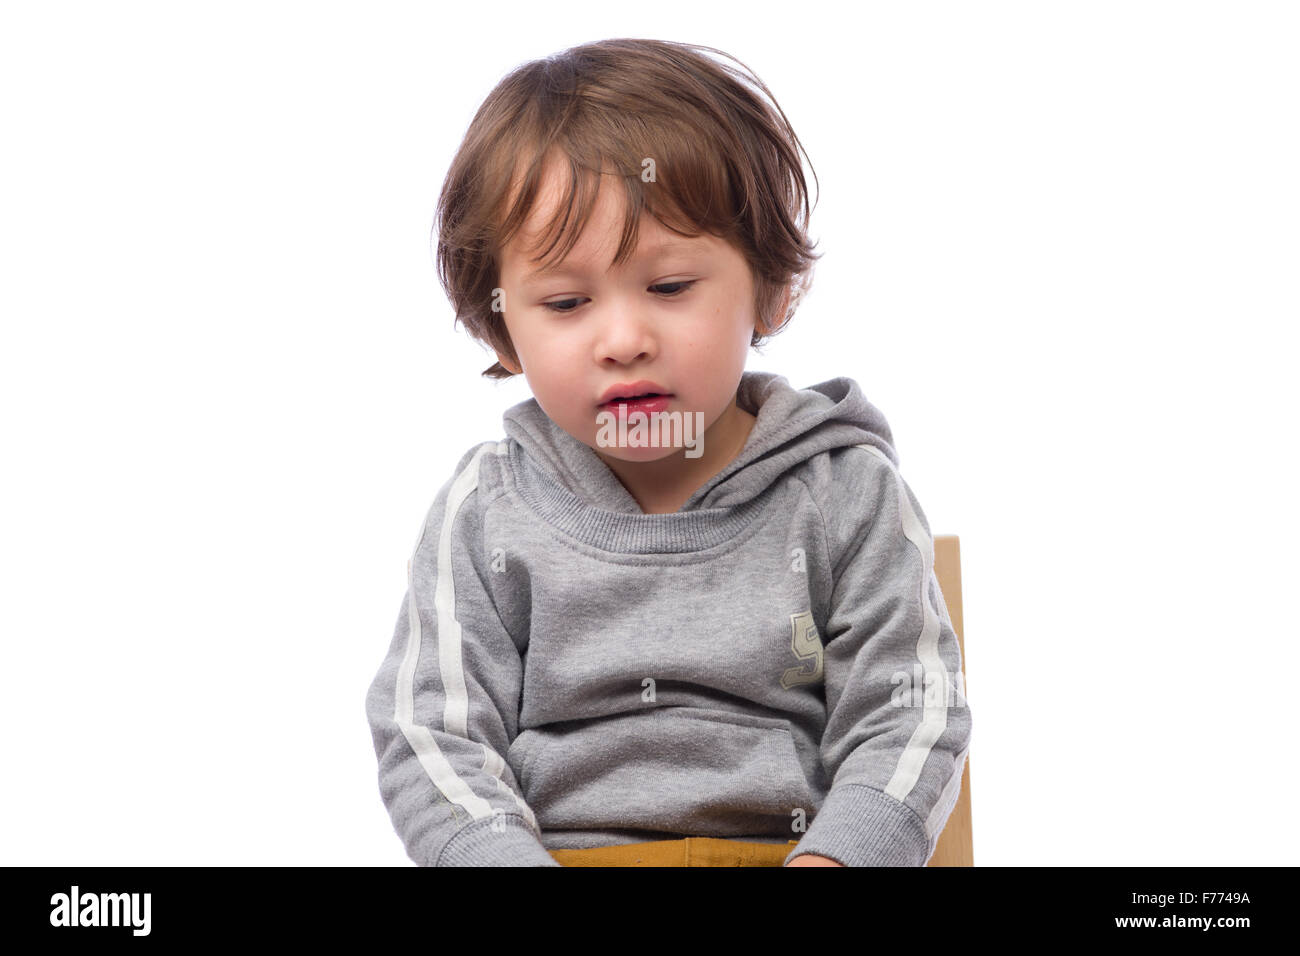 Un lindo hijo de 3 años con una expresión triste sobre un fondo blanco. Foto de stock